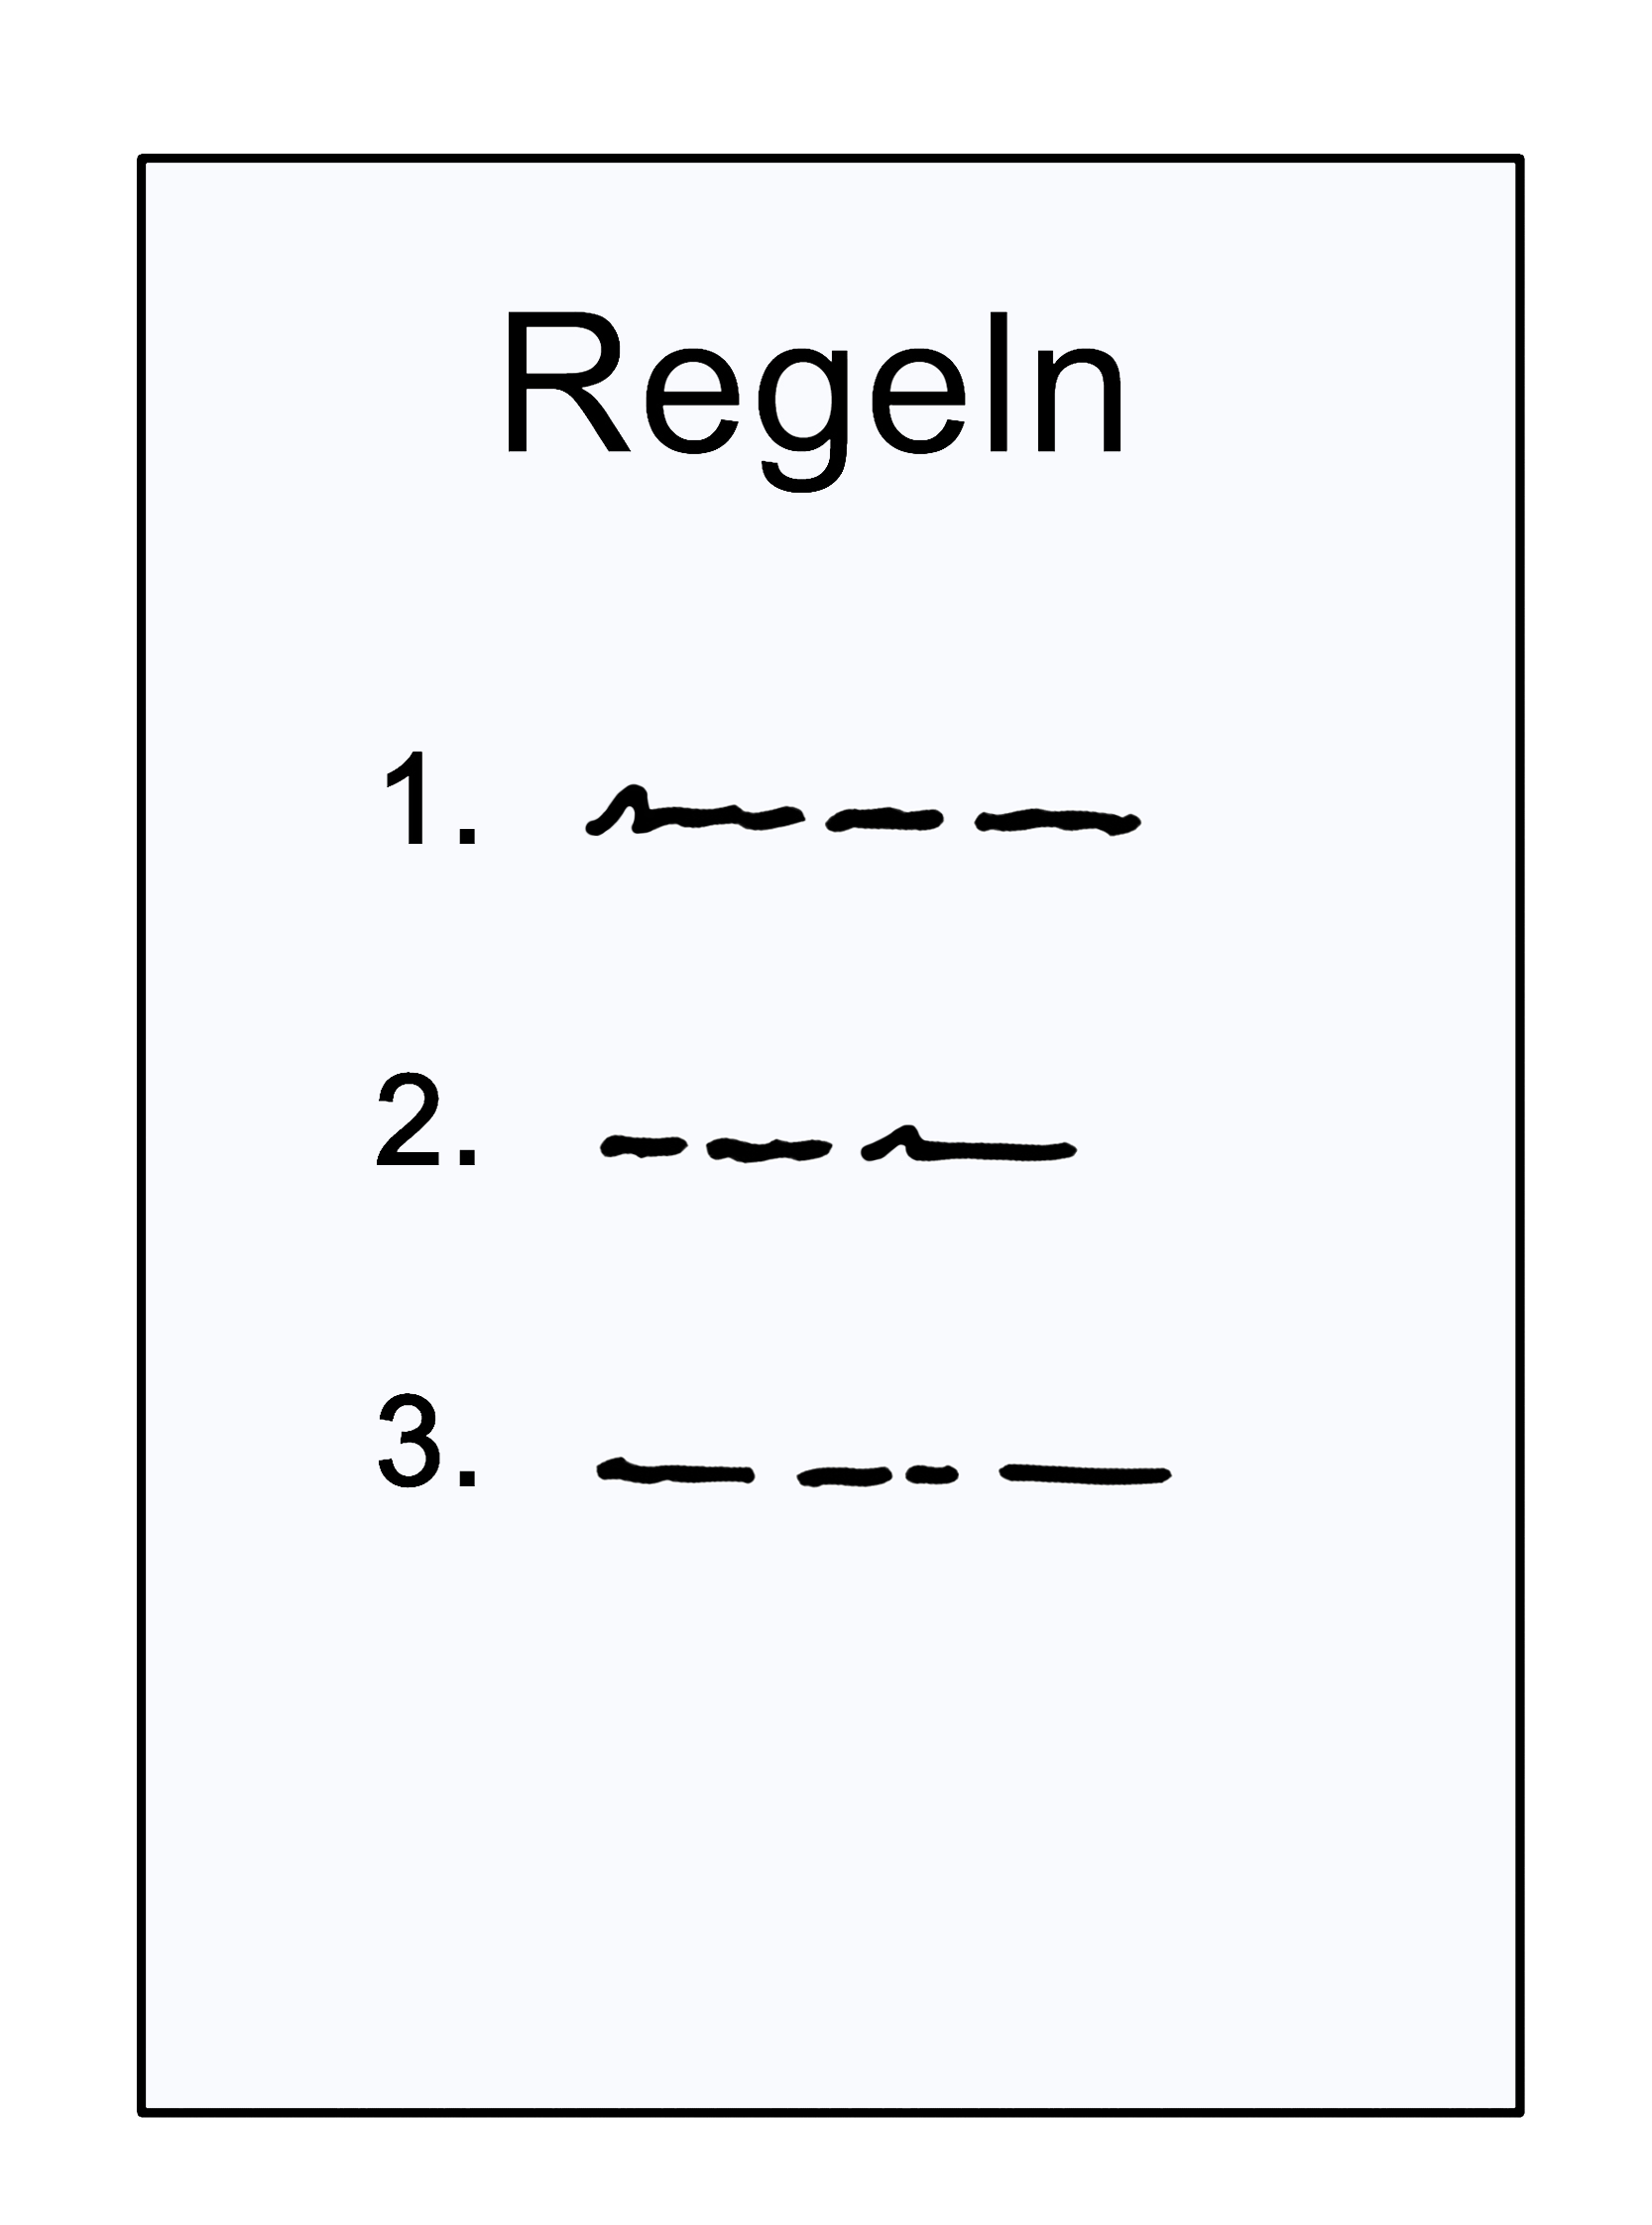 Illustration: Ein Blatt Papier mit der Aufschrift "Regeln" und "1., 2., 3."